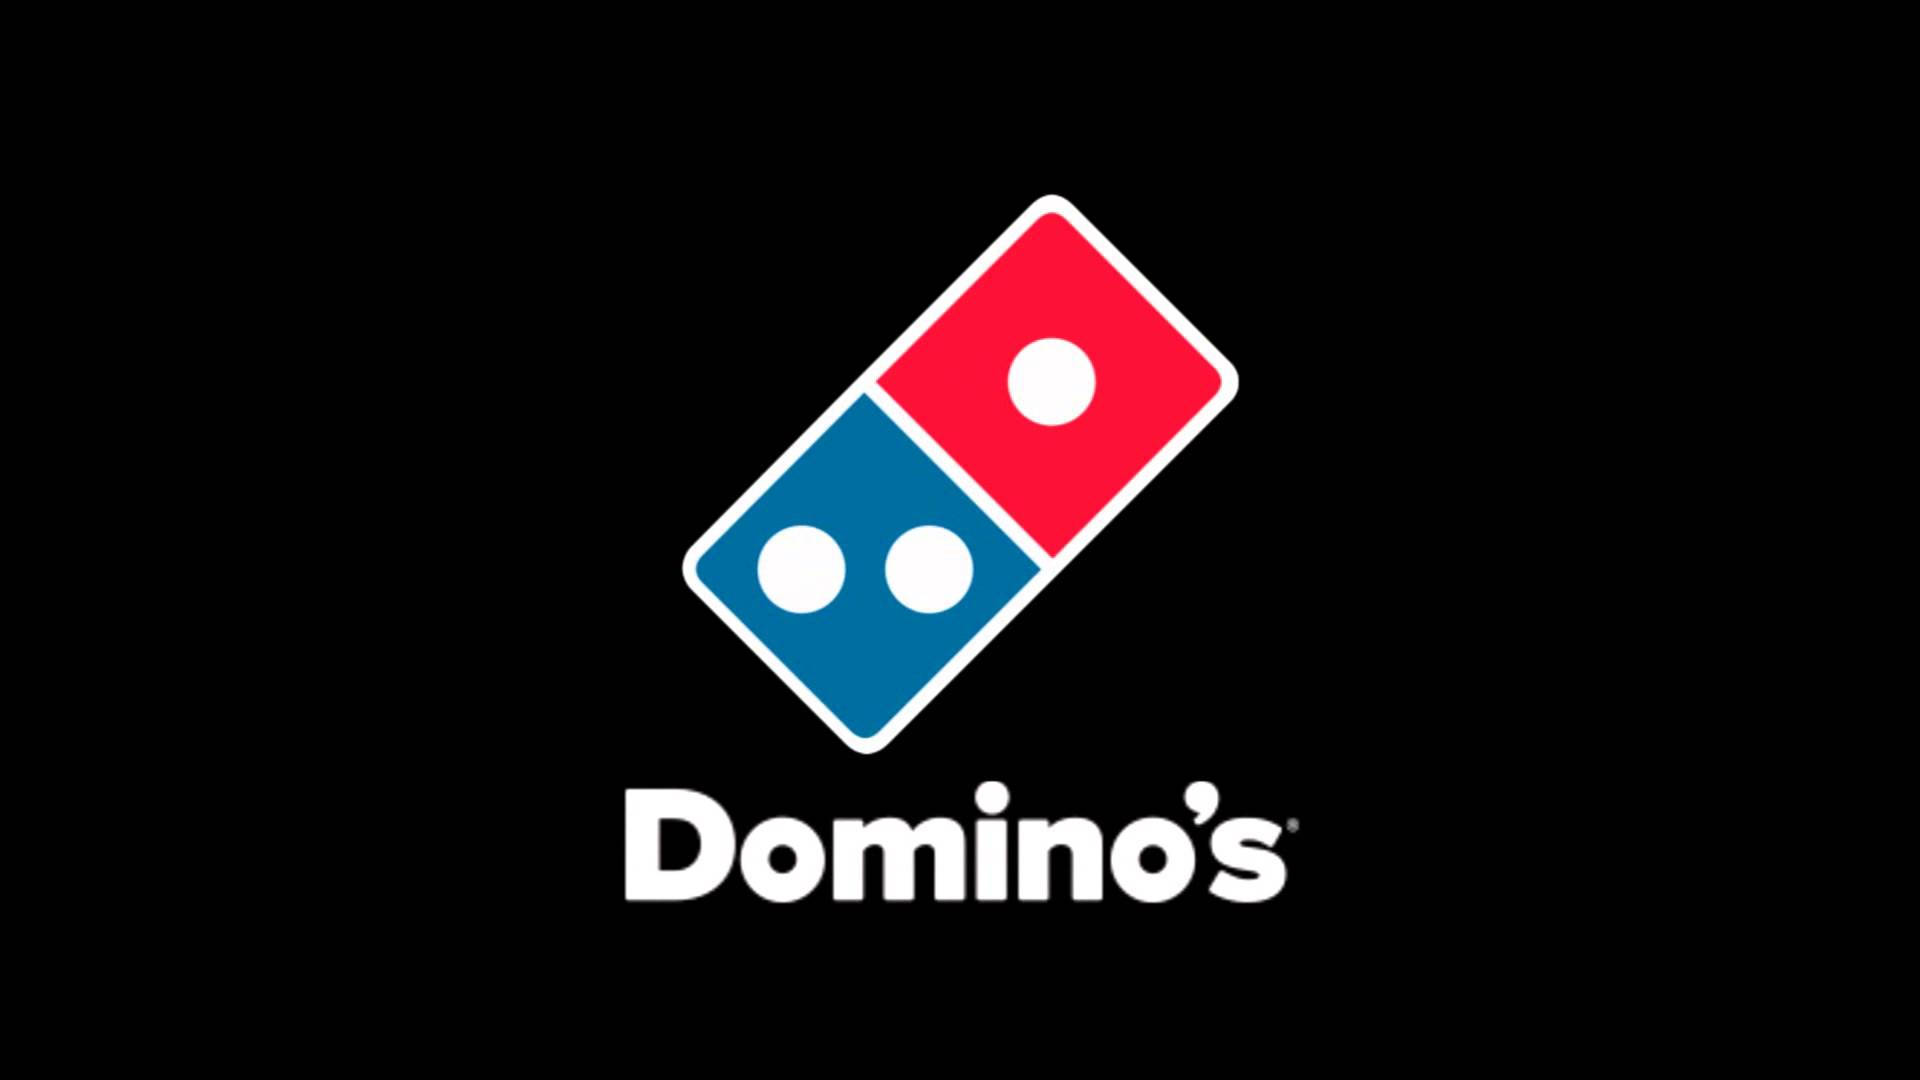 Logoda Dominos Pizza Em Preto. Papel de Parede